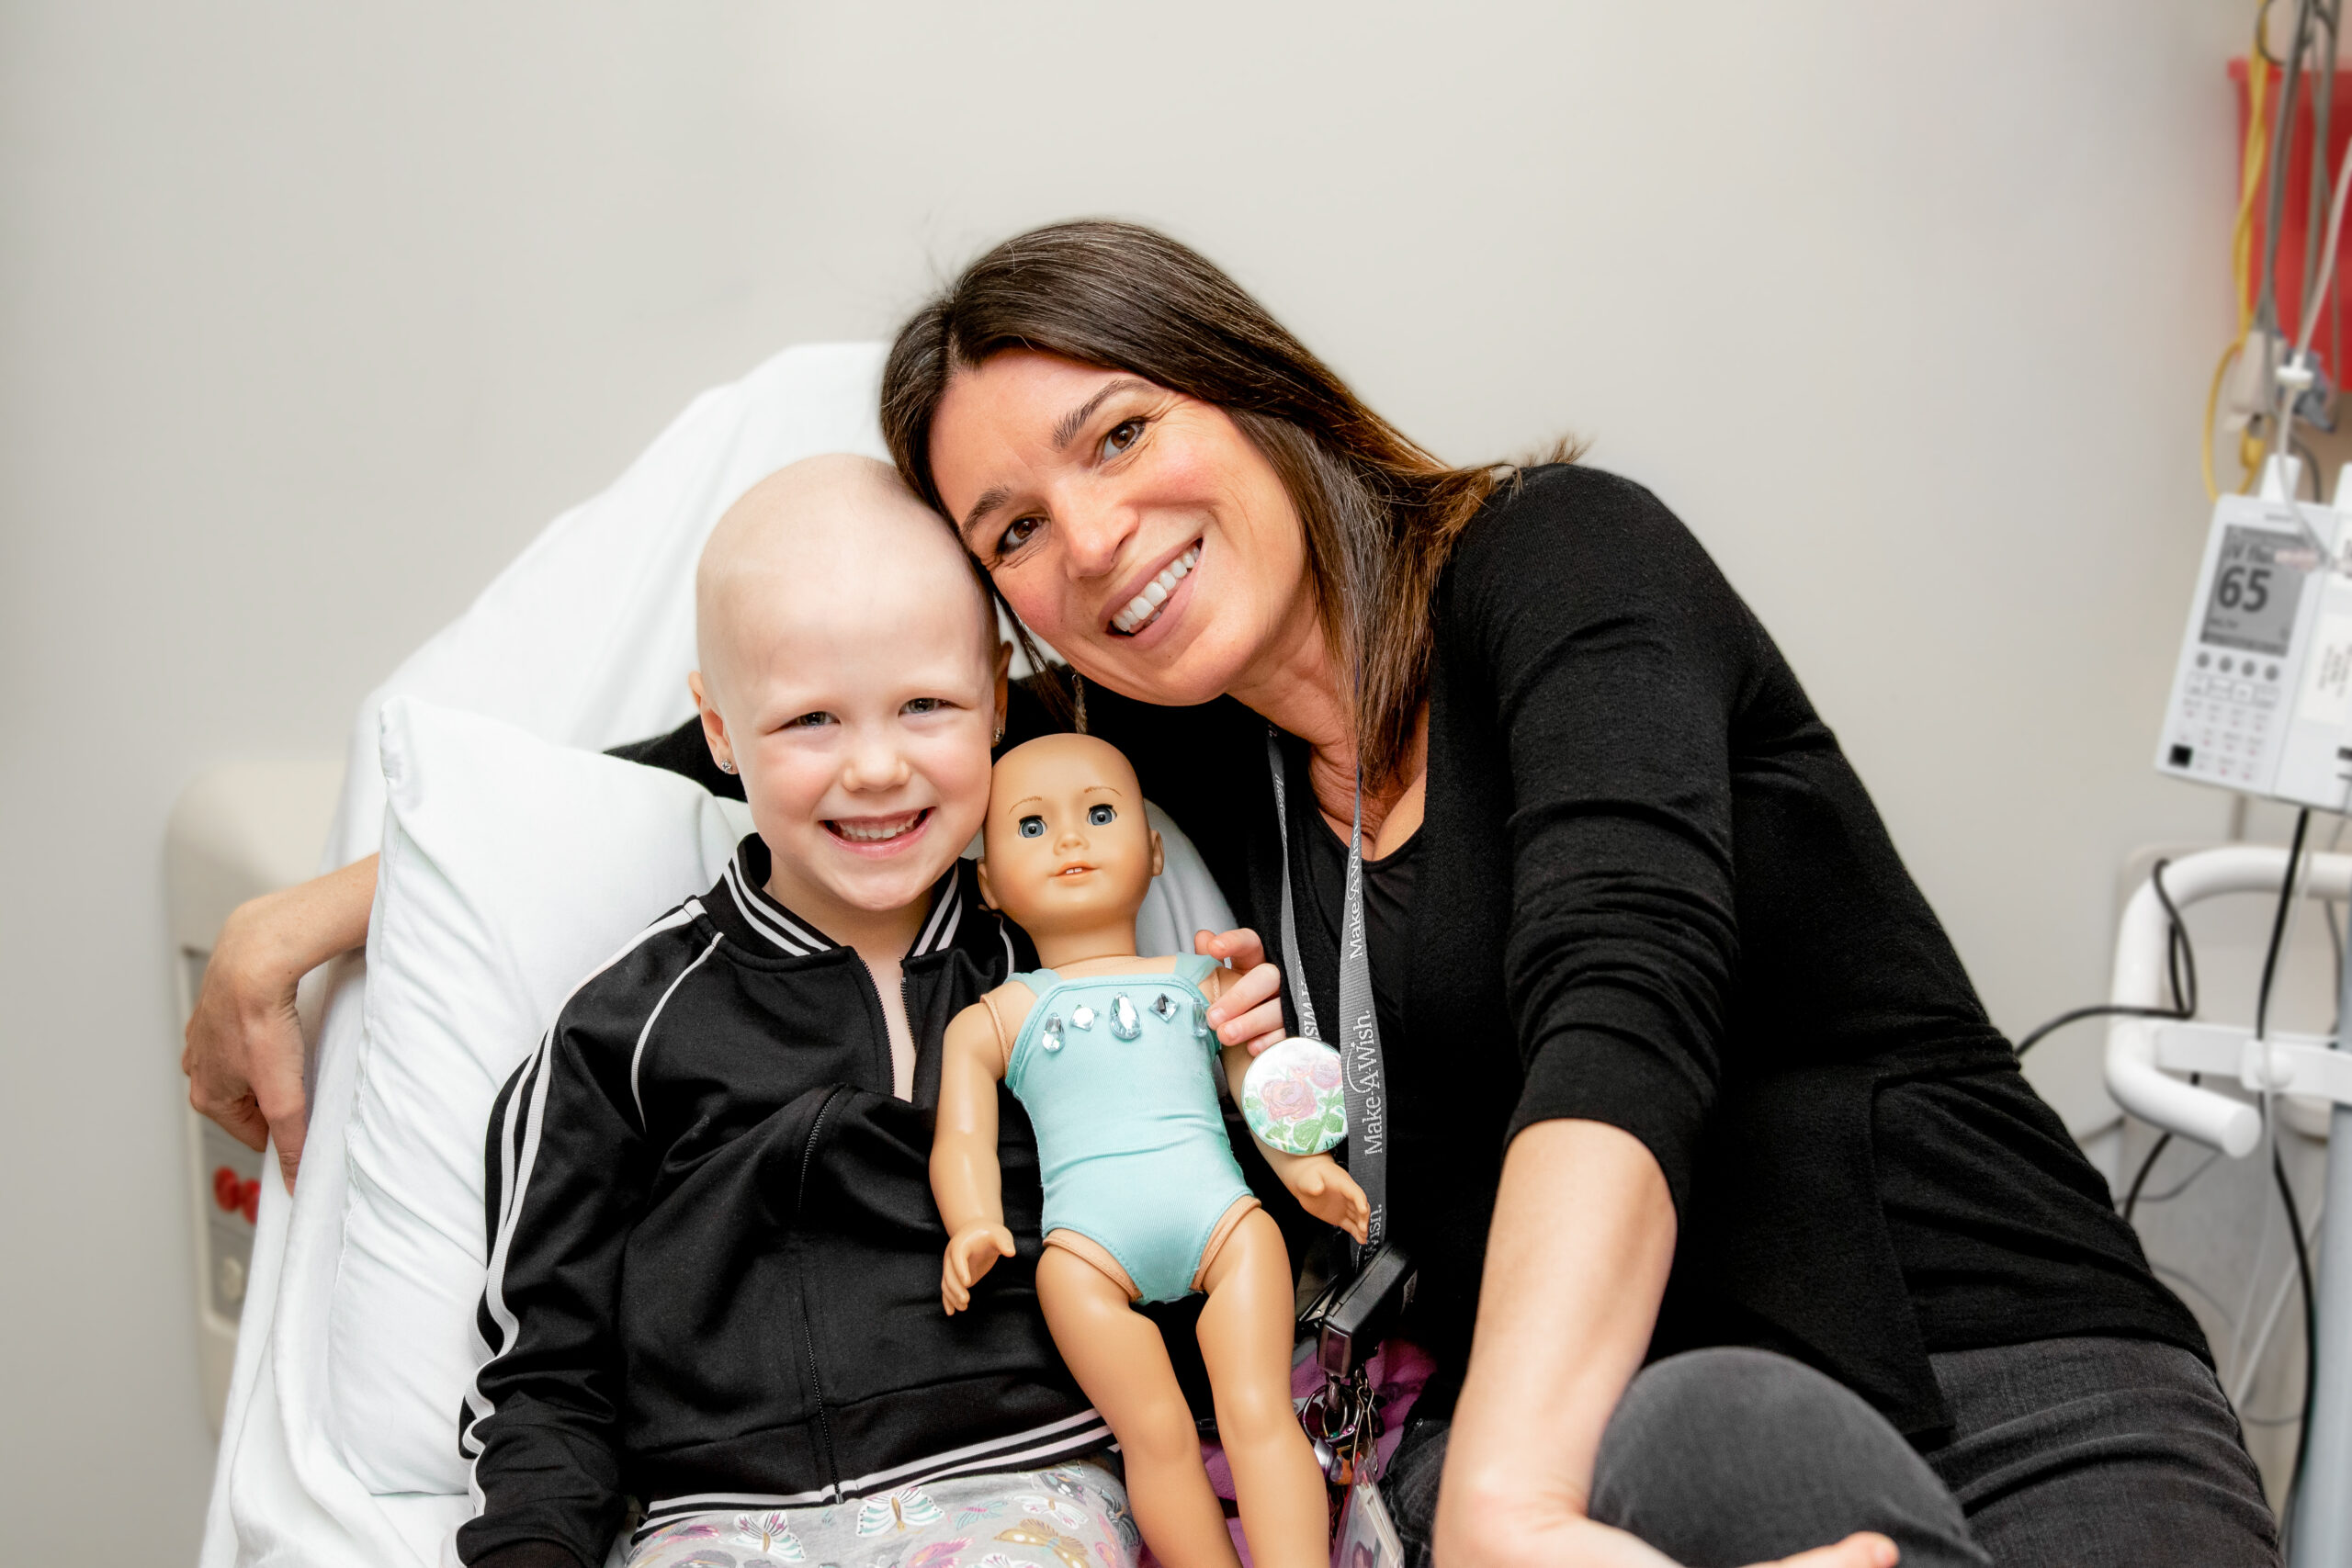 Lauren, Cancer Patient at Children's Hospital, London Health Sciences Centre